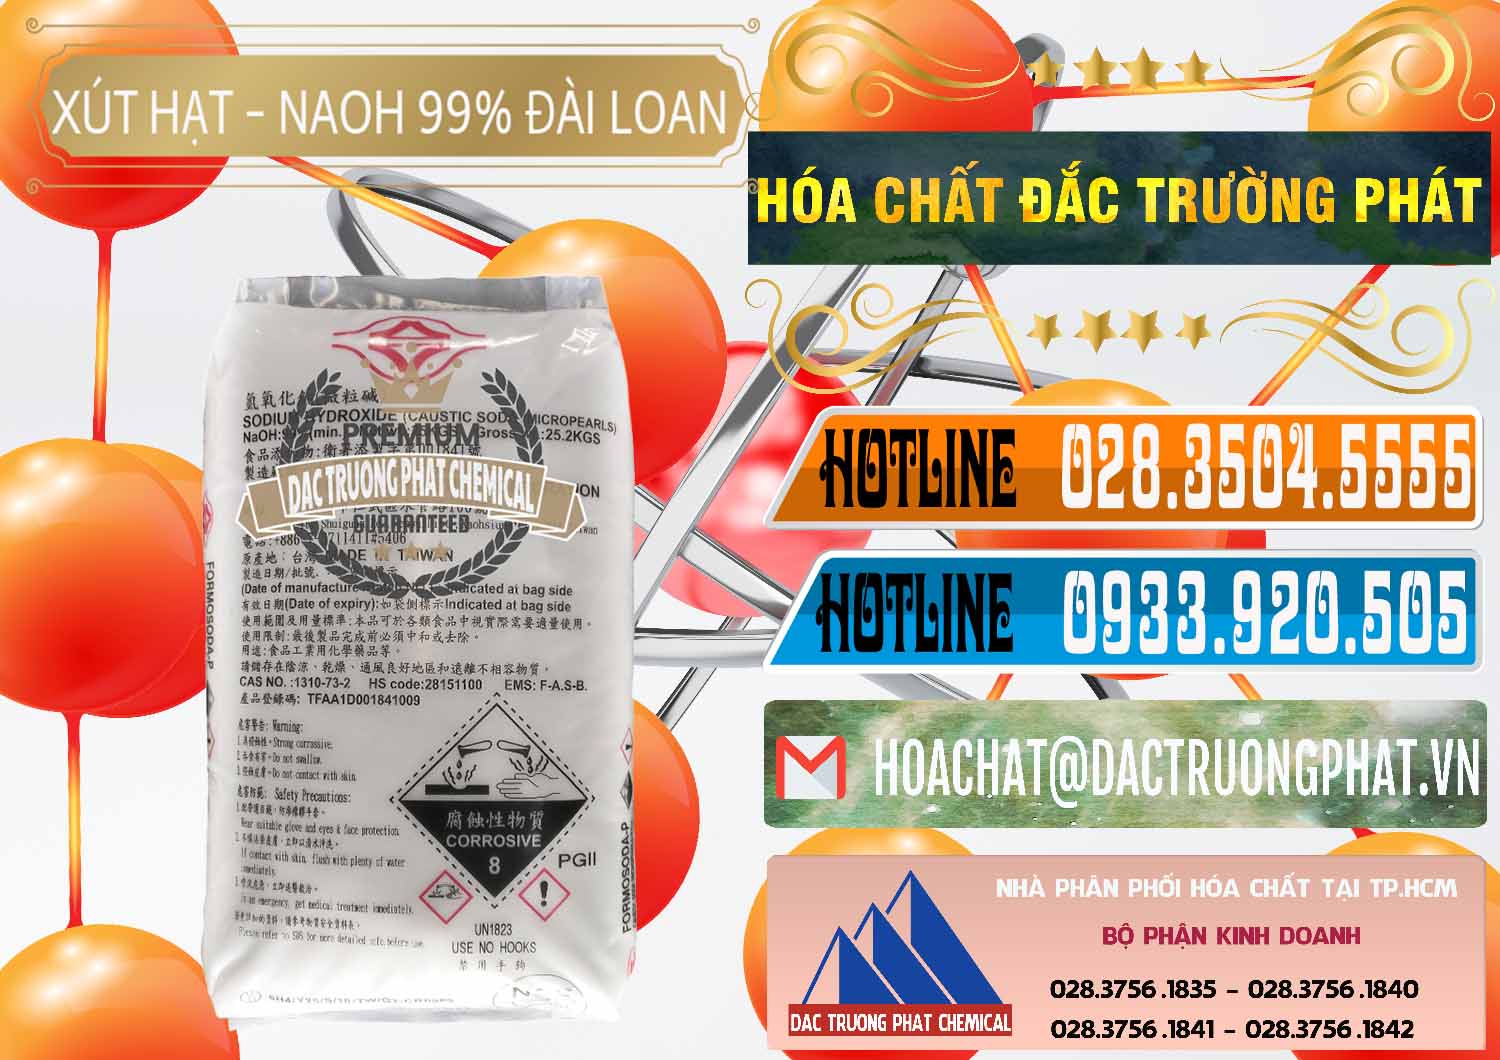 Cty phân phối - bán Xút Hạt - NaOH Bột 99% Đài Loan Taiwan Formosa - 0167 - Chuyên cung cấp - phân phối hóa chất tại TP.HCM - stmp.net